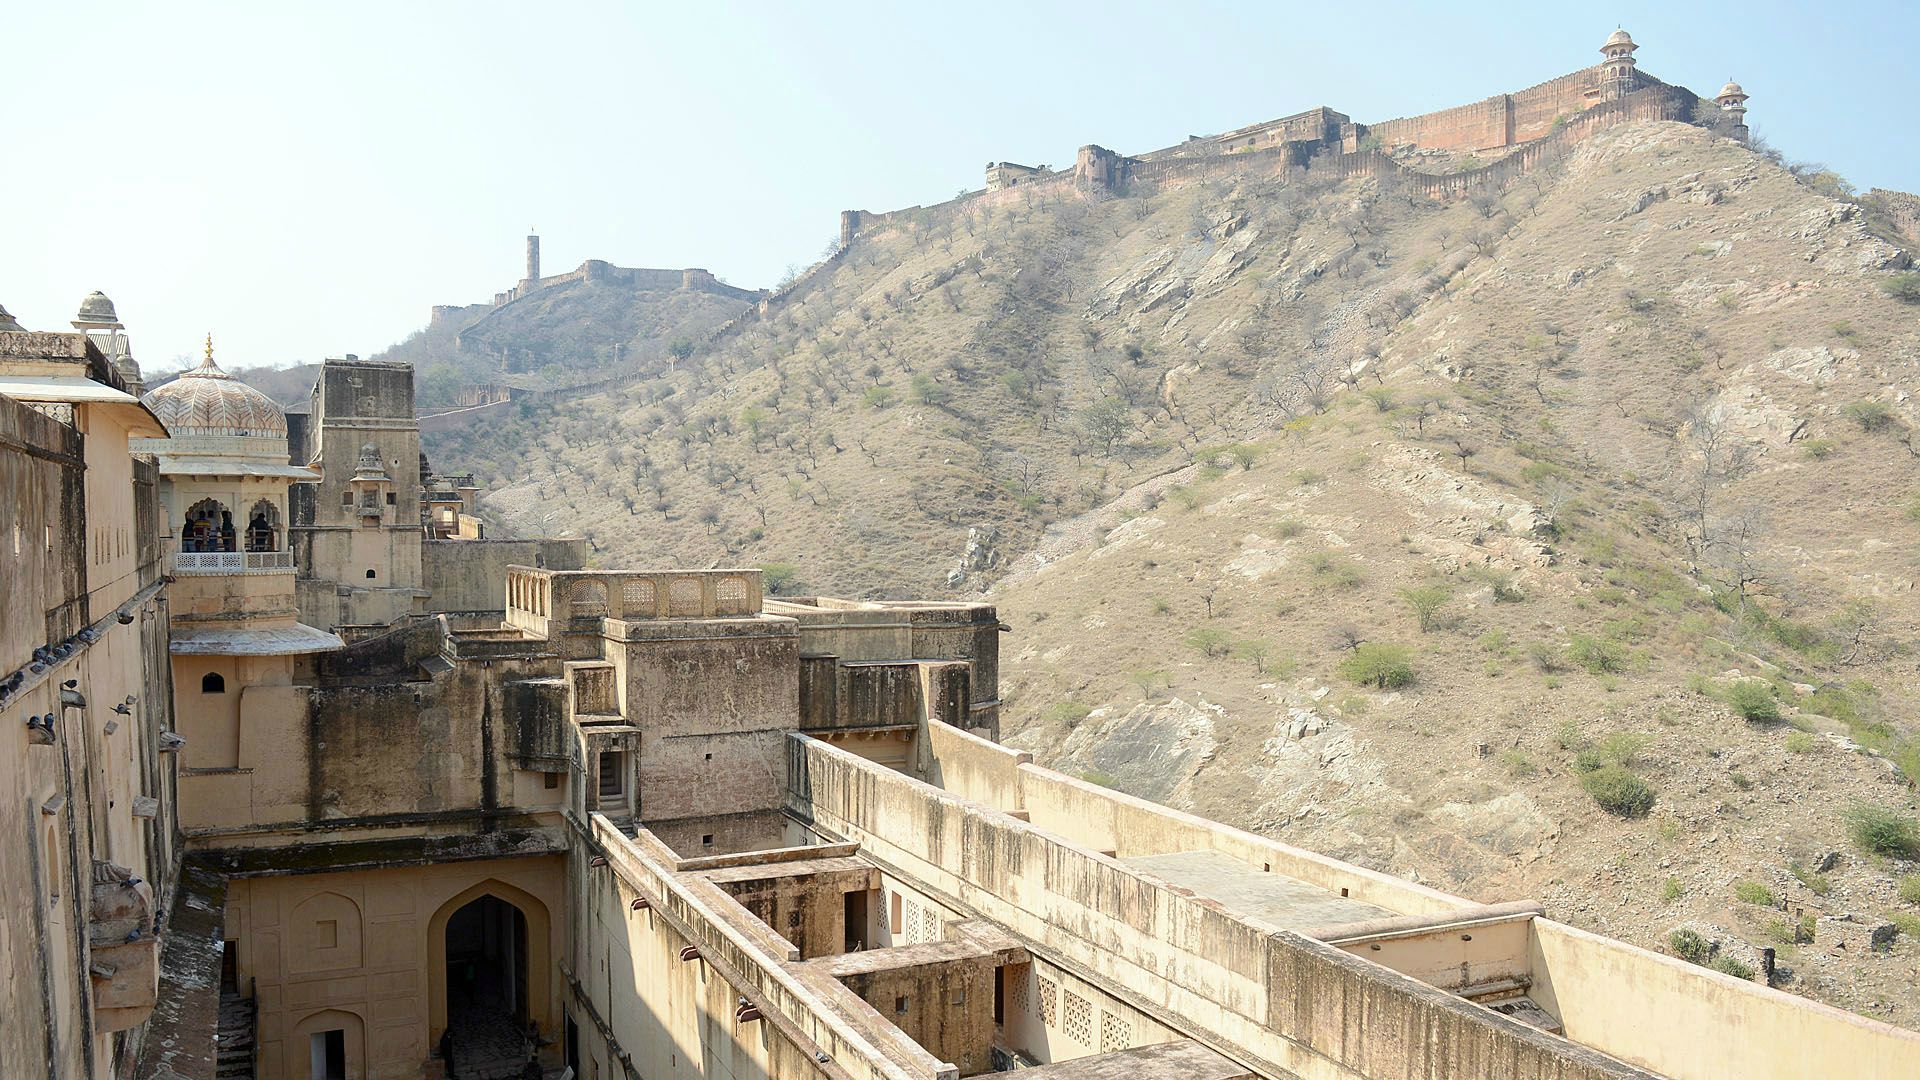 Amber Fort - kompleks budowli obronnych i pałacowych